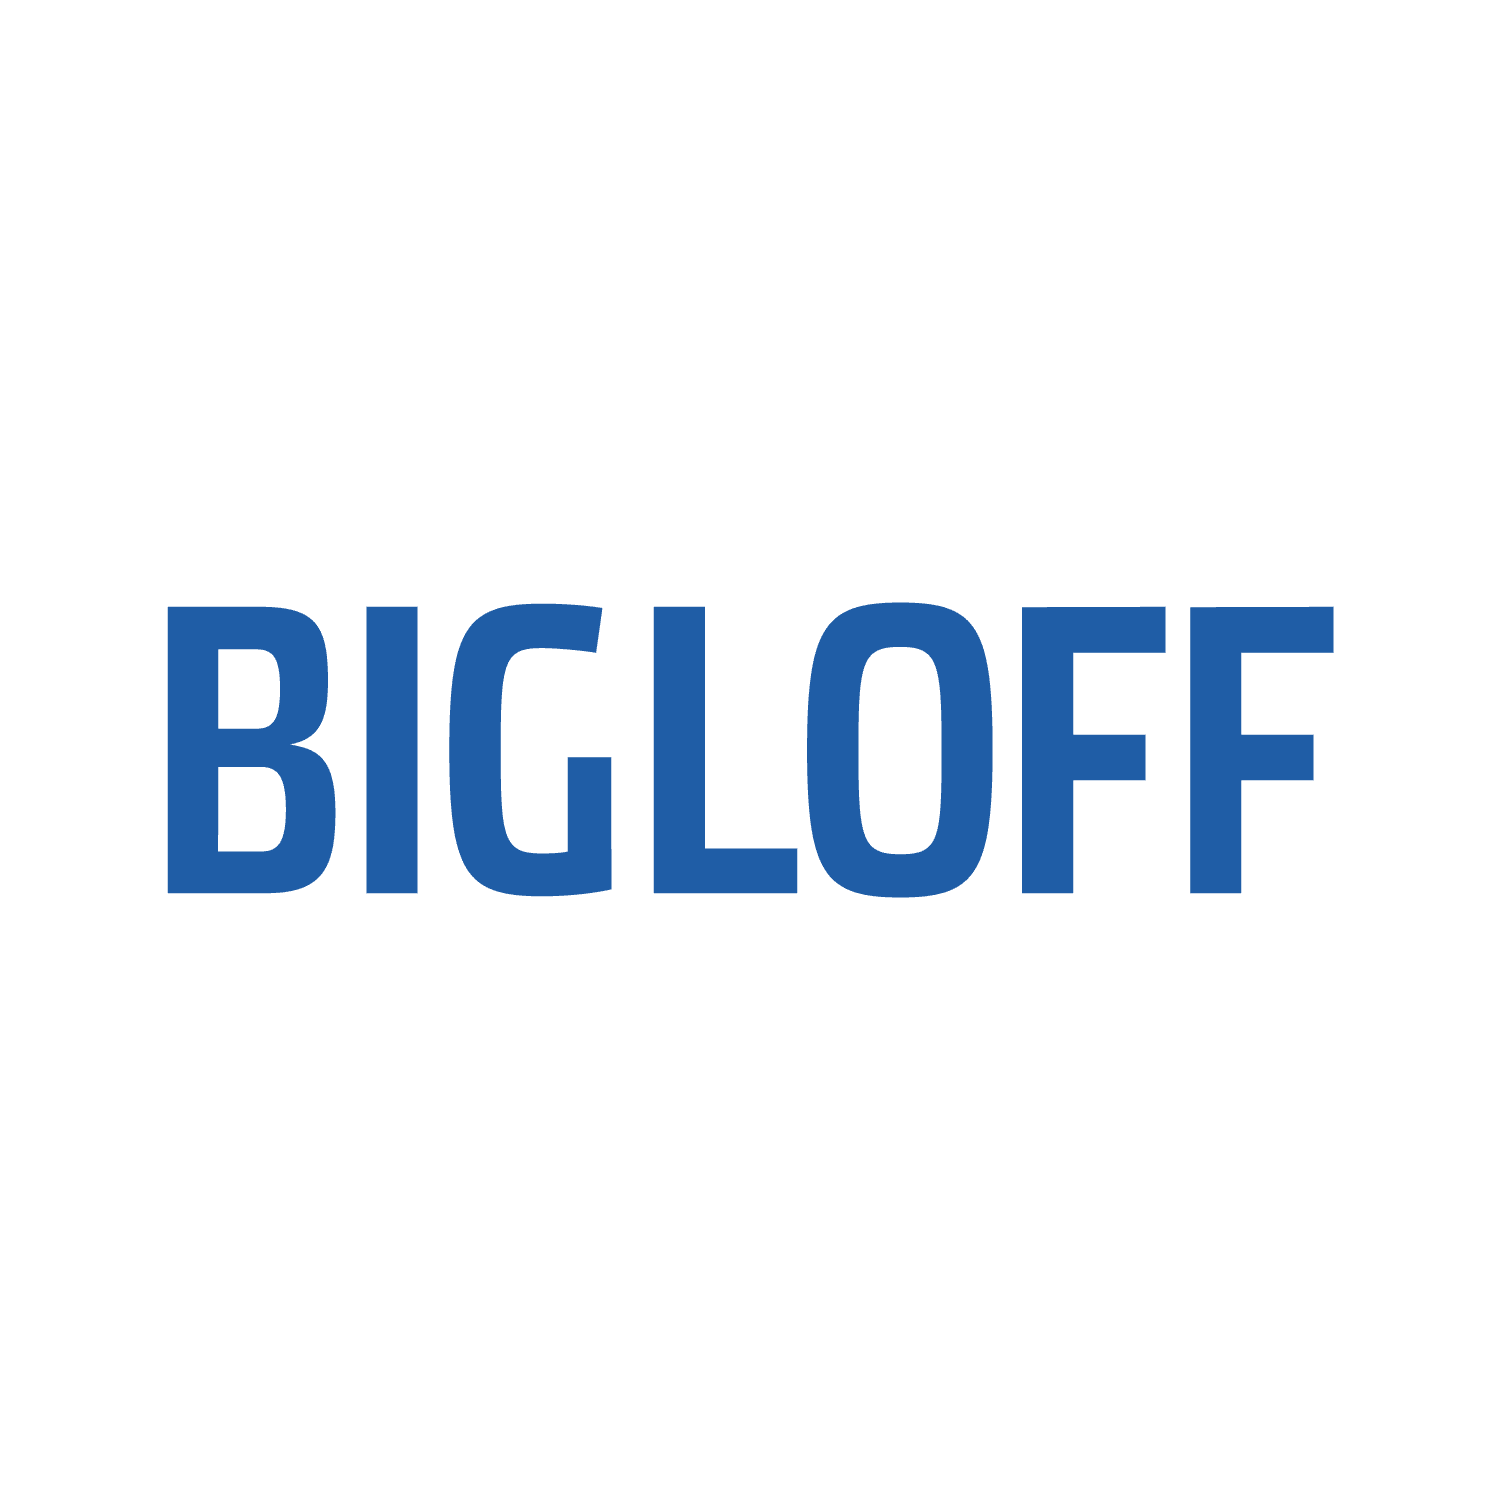 Bigloff